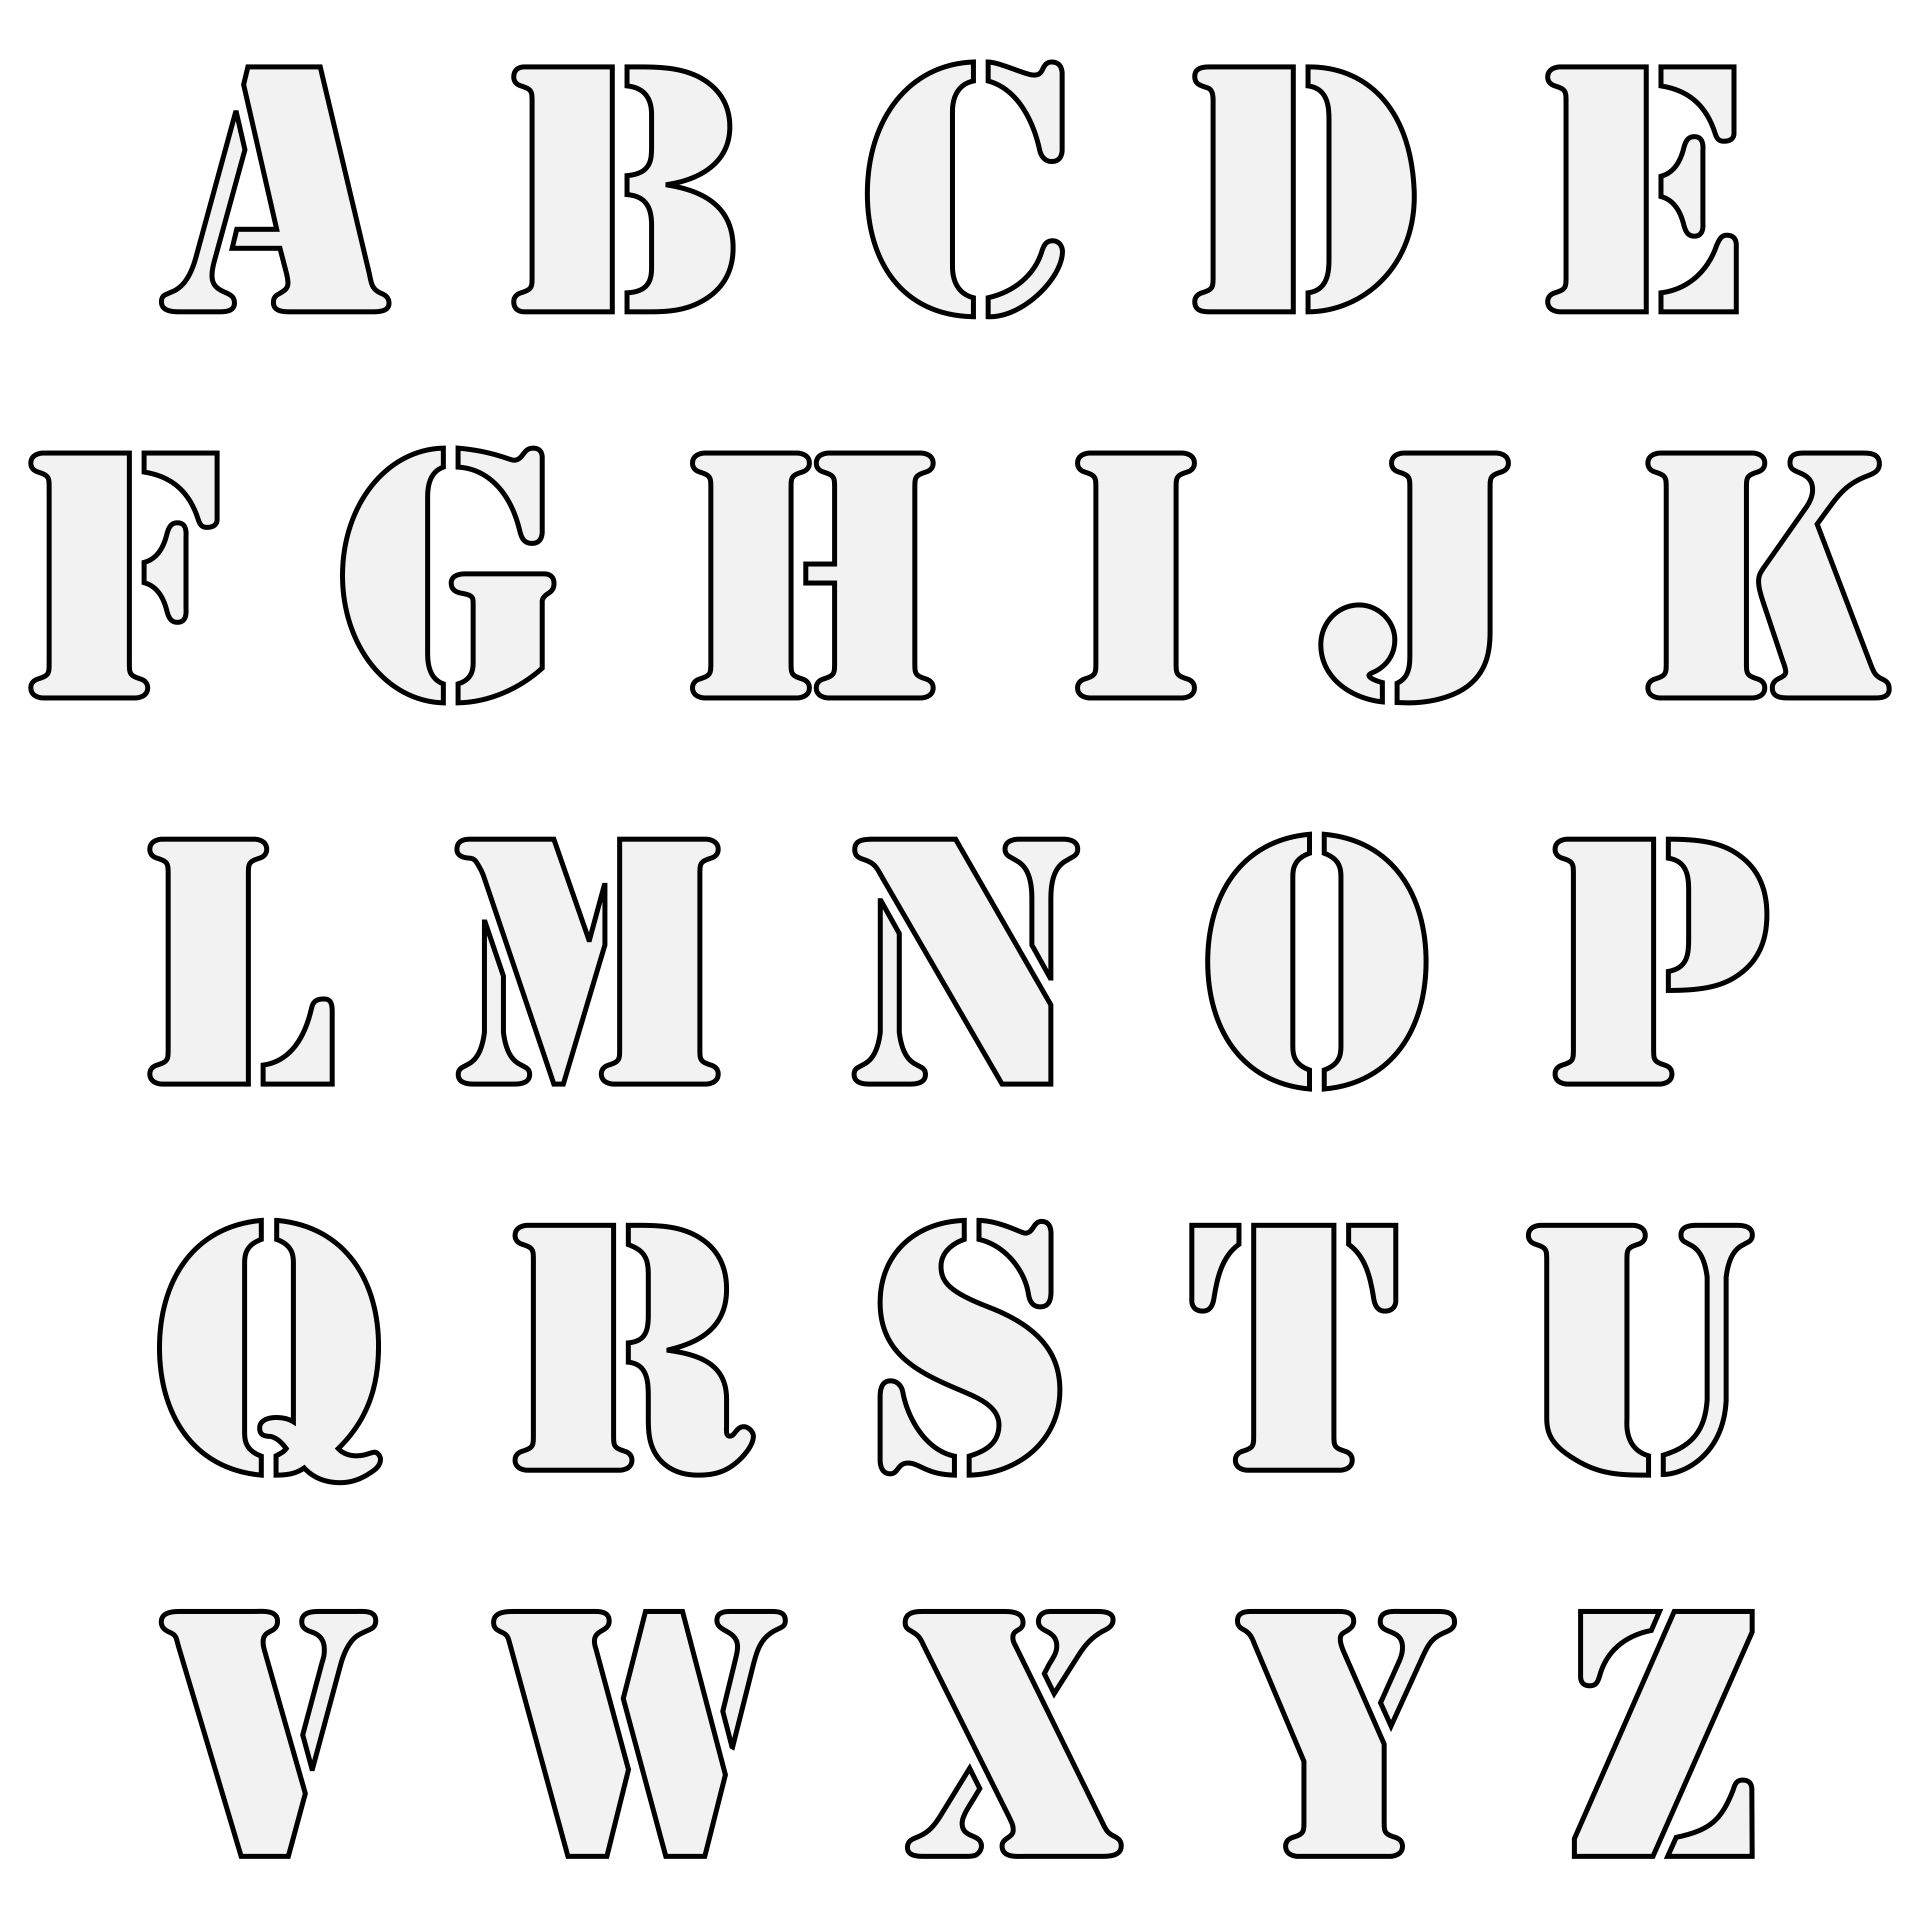 printable-letters-cut-out-letter-a-cut-out-template-alphabet-letter-a